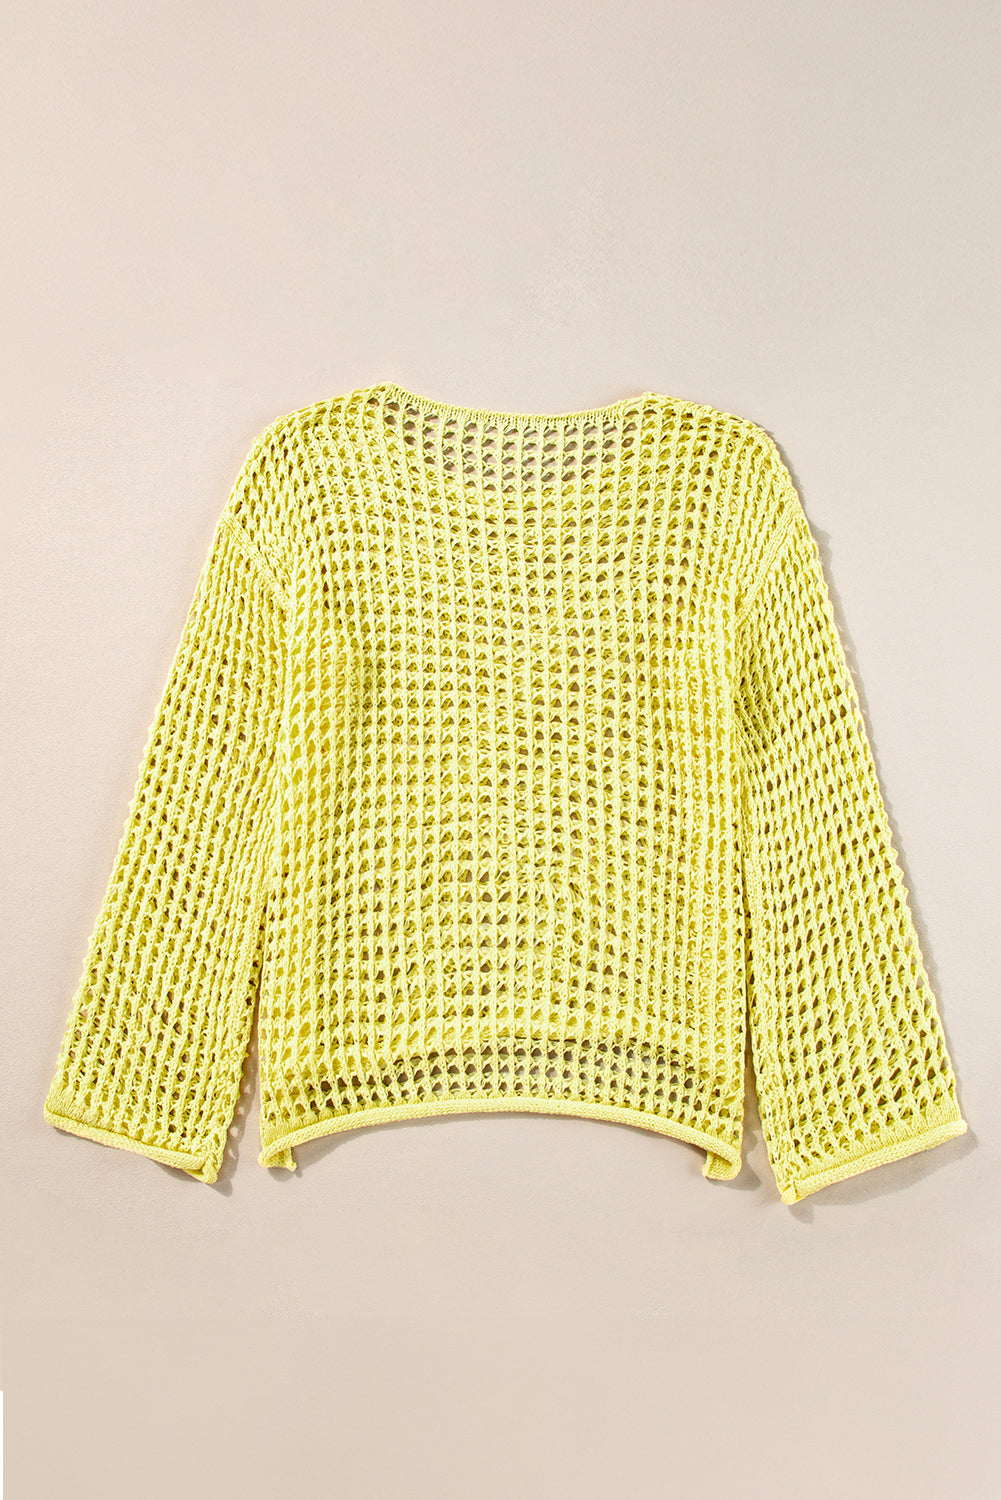 Orange Open Knit Crochet Bell Sleeve Tunic Sweater